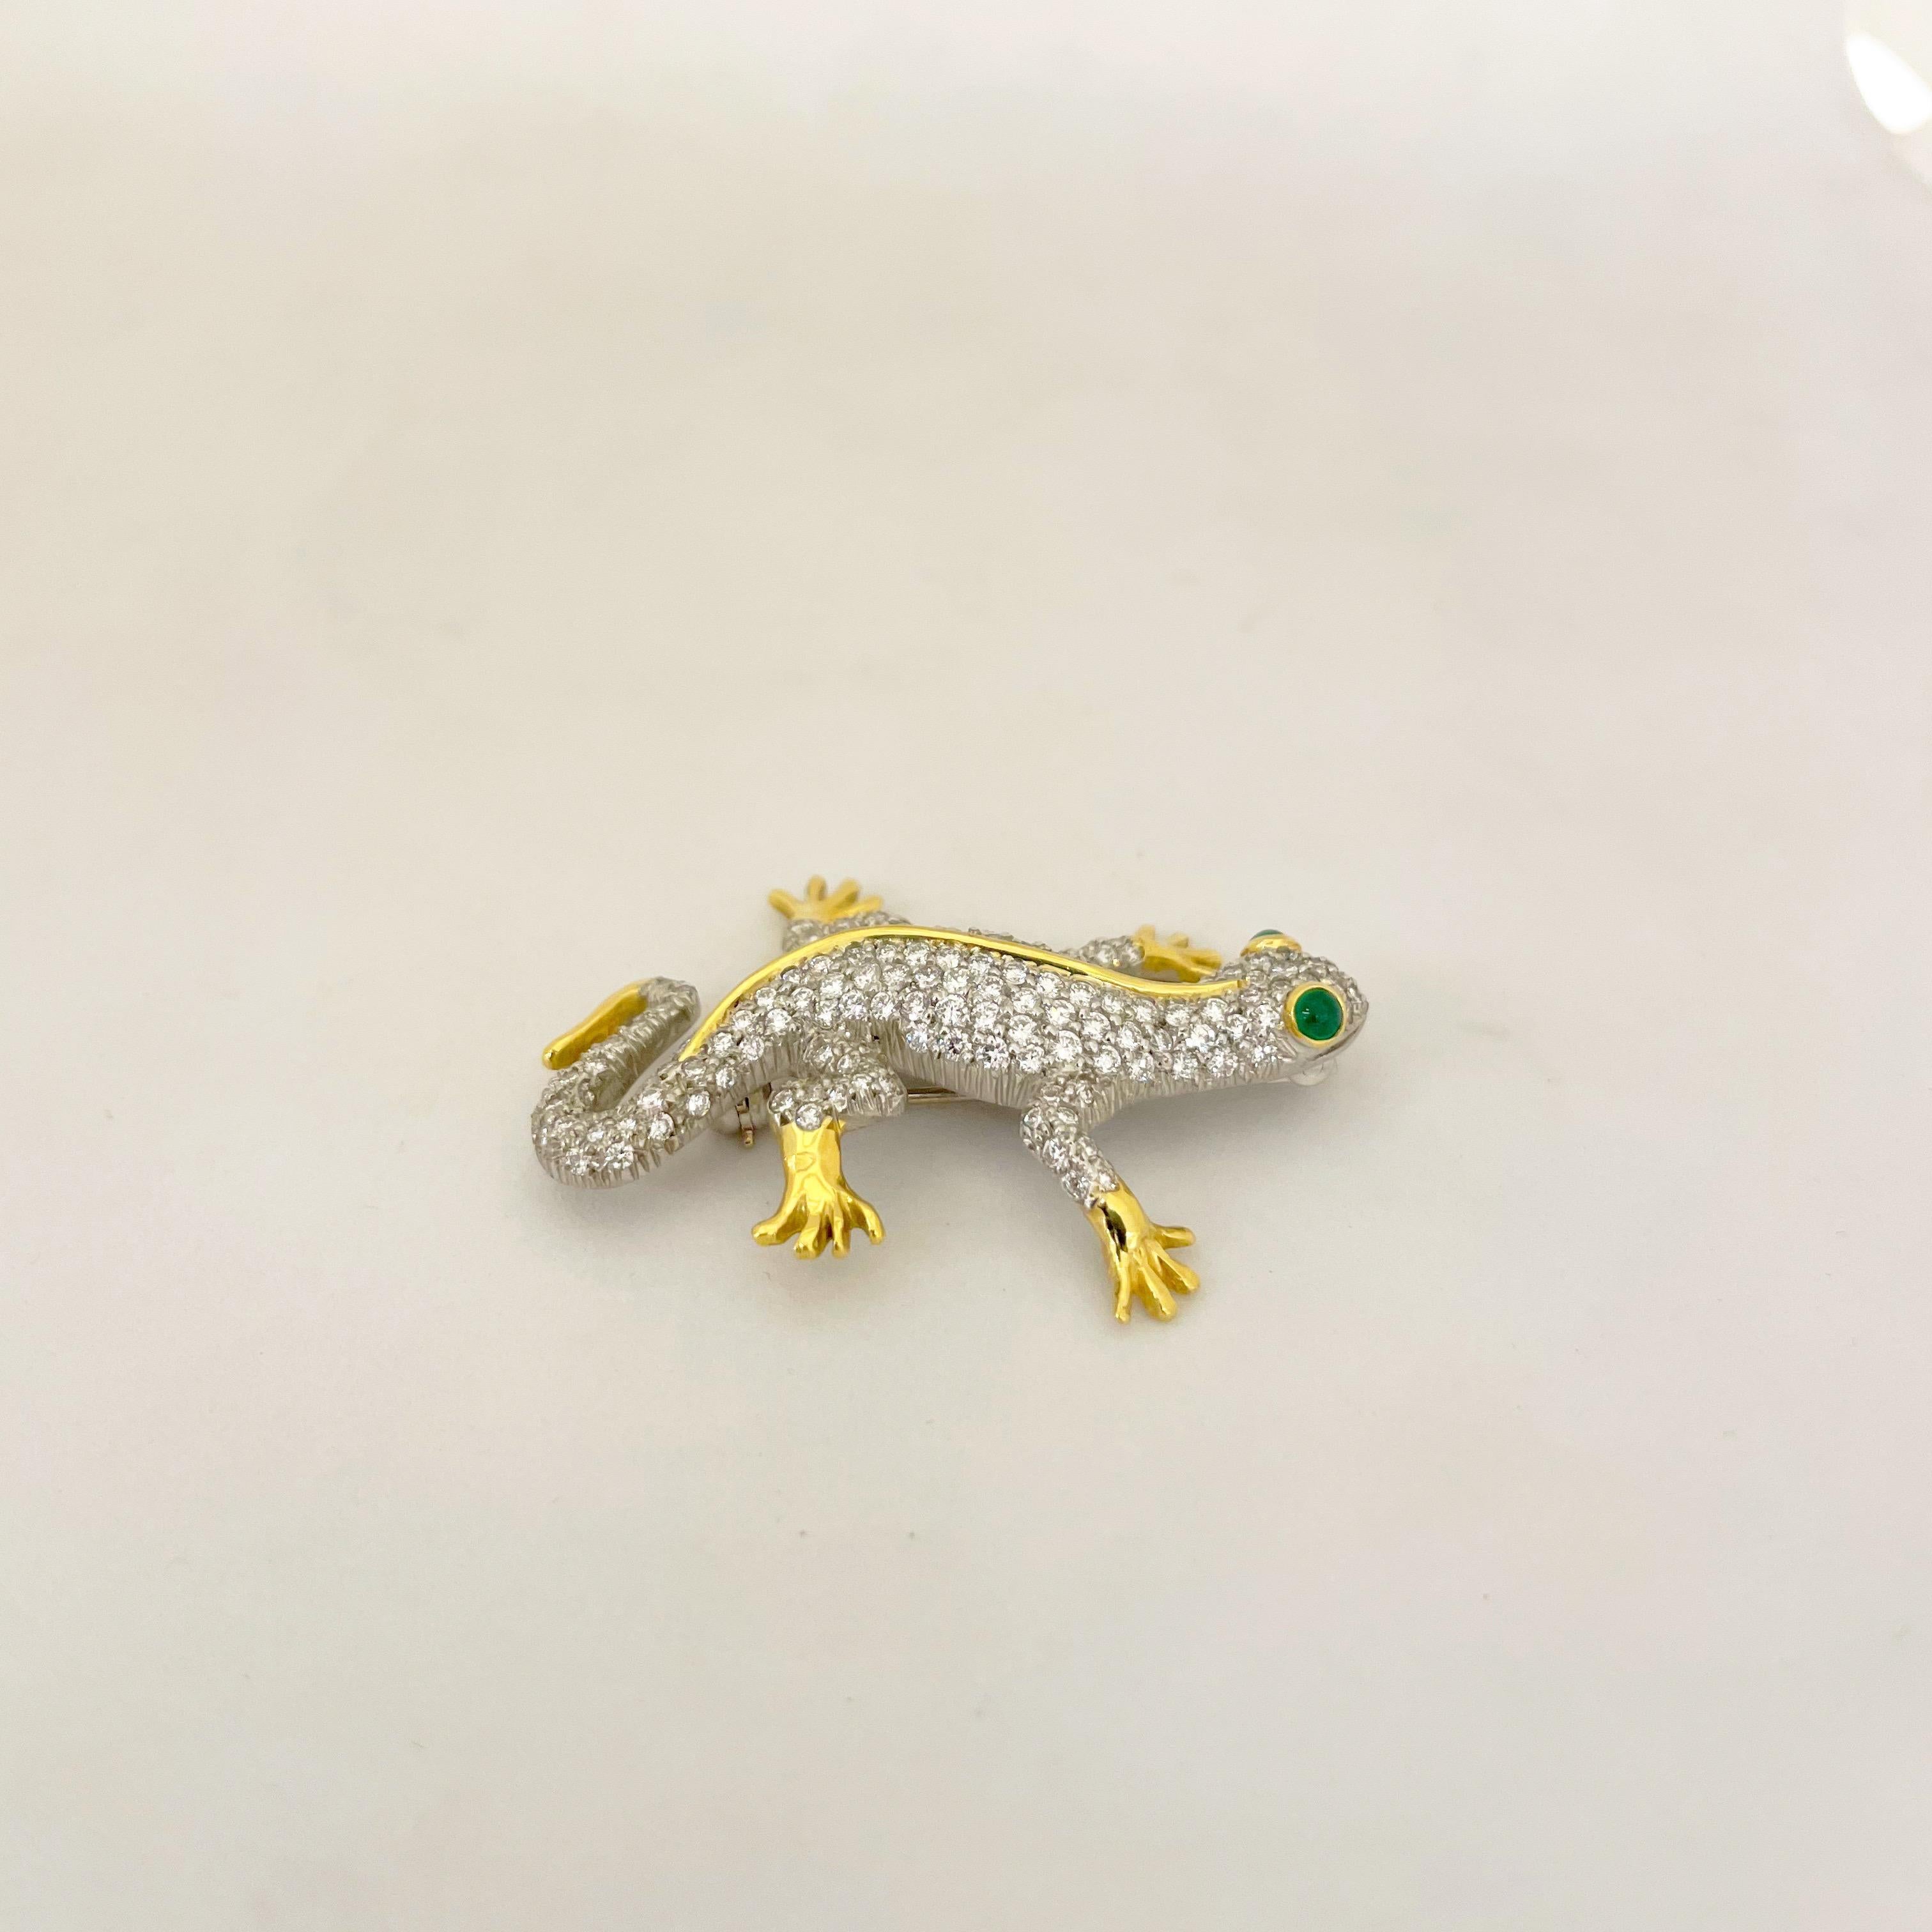 Cet adorable Cellini  la broche salamandre en platine et or jaune 18 carats est magnifiquement sertie de diamants ronds et brillants. Son corps est détaillé avec de l'or jaune très poli pour ses pieds et sa colonne vertébrale. Ses yeux sont sertis